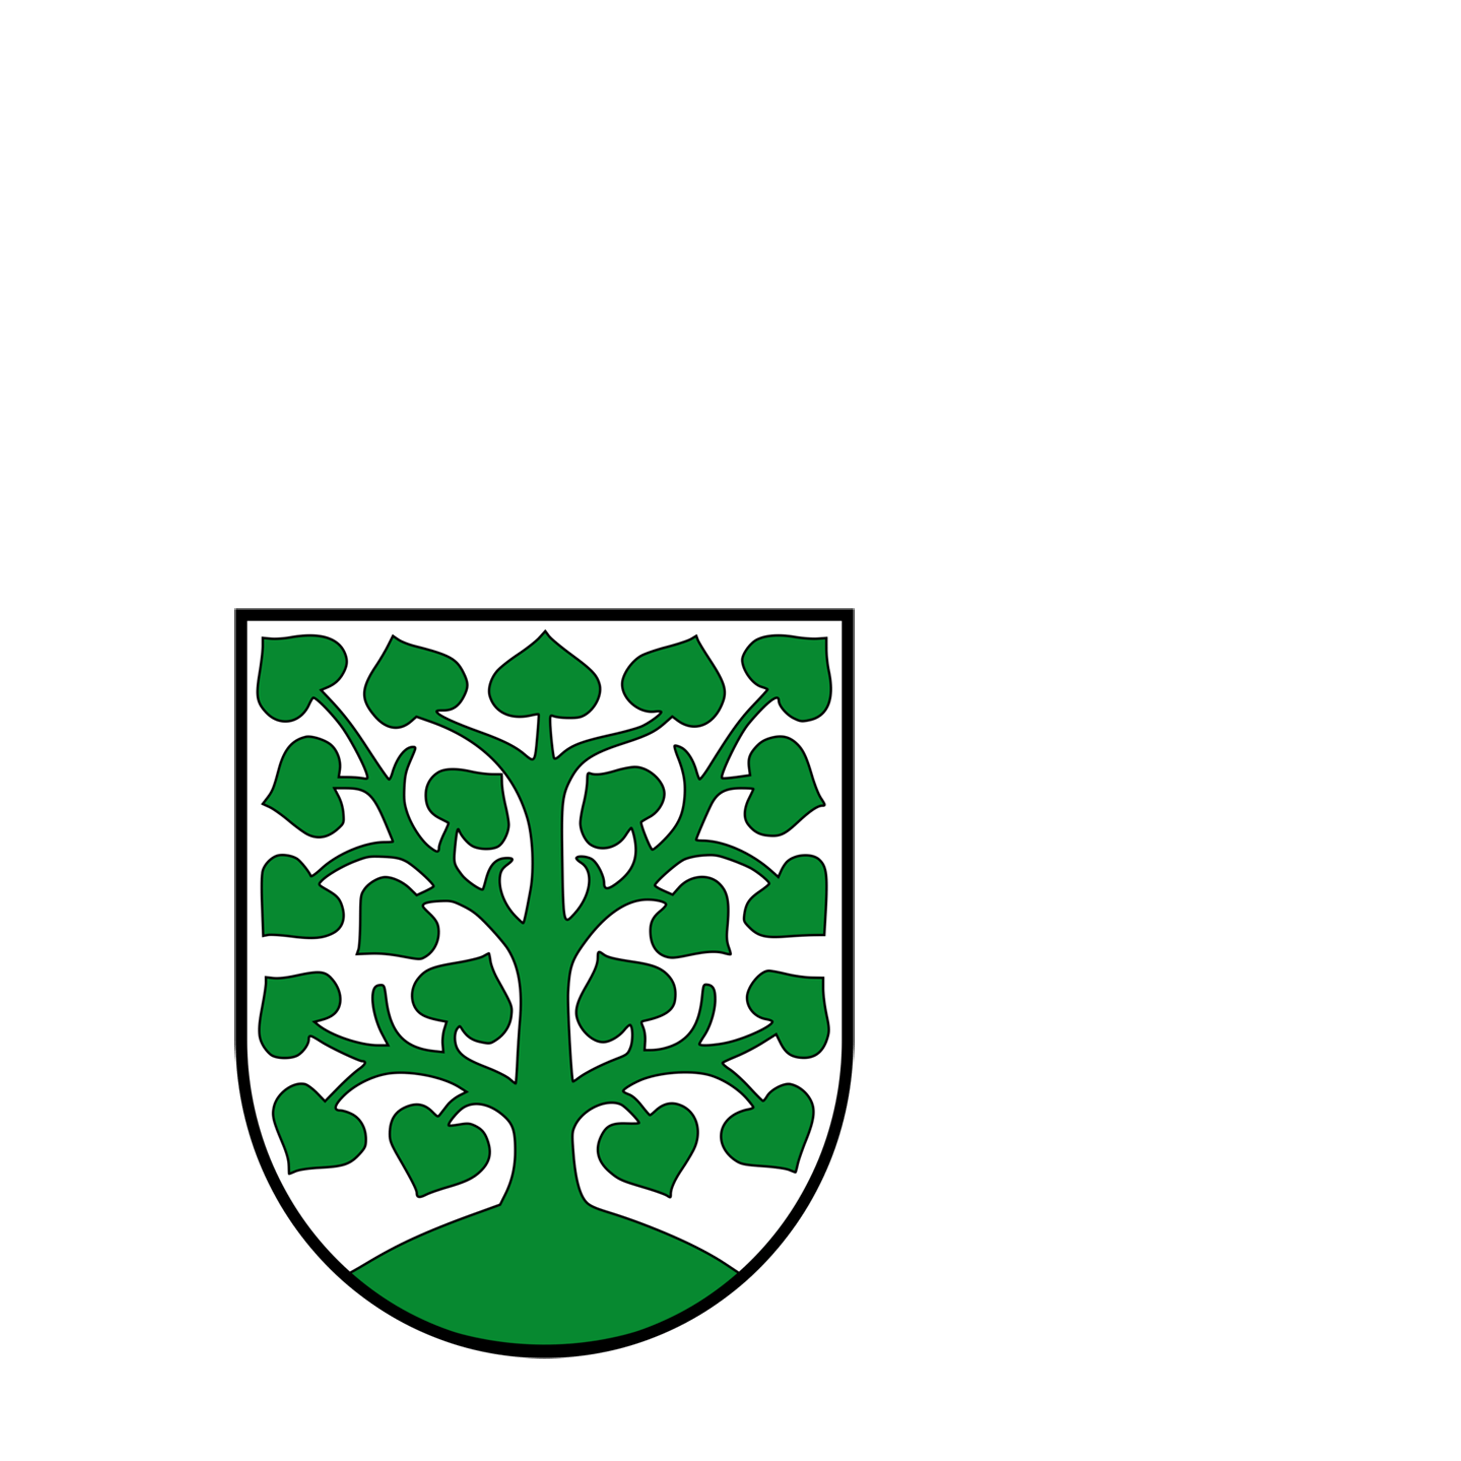 Wappen der Kreisstadt Homburg - © Kreisstadt Homburg